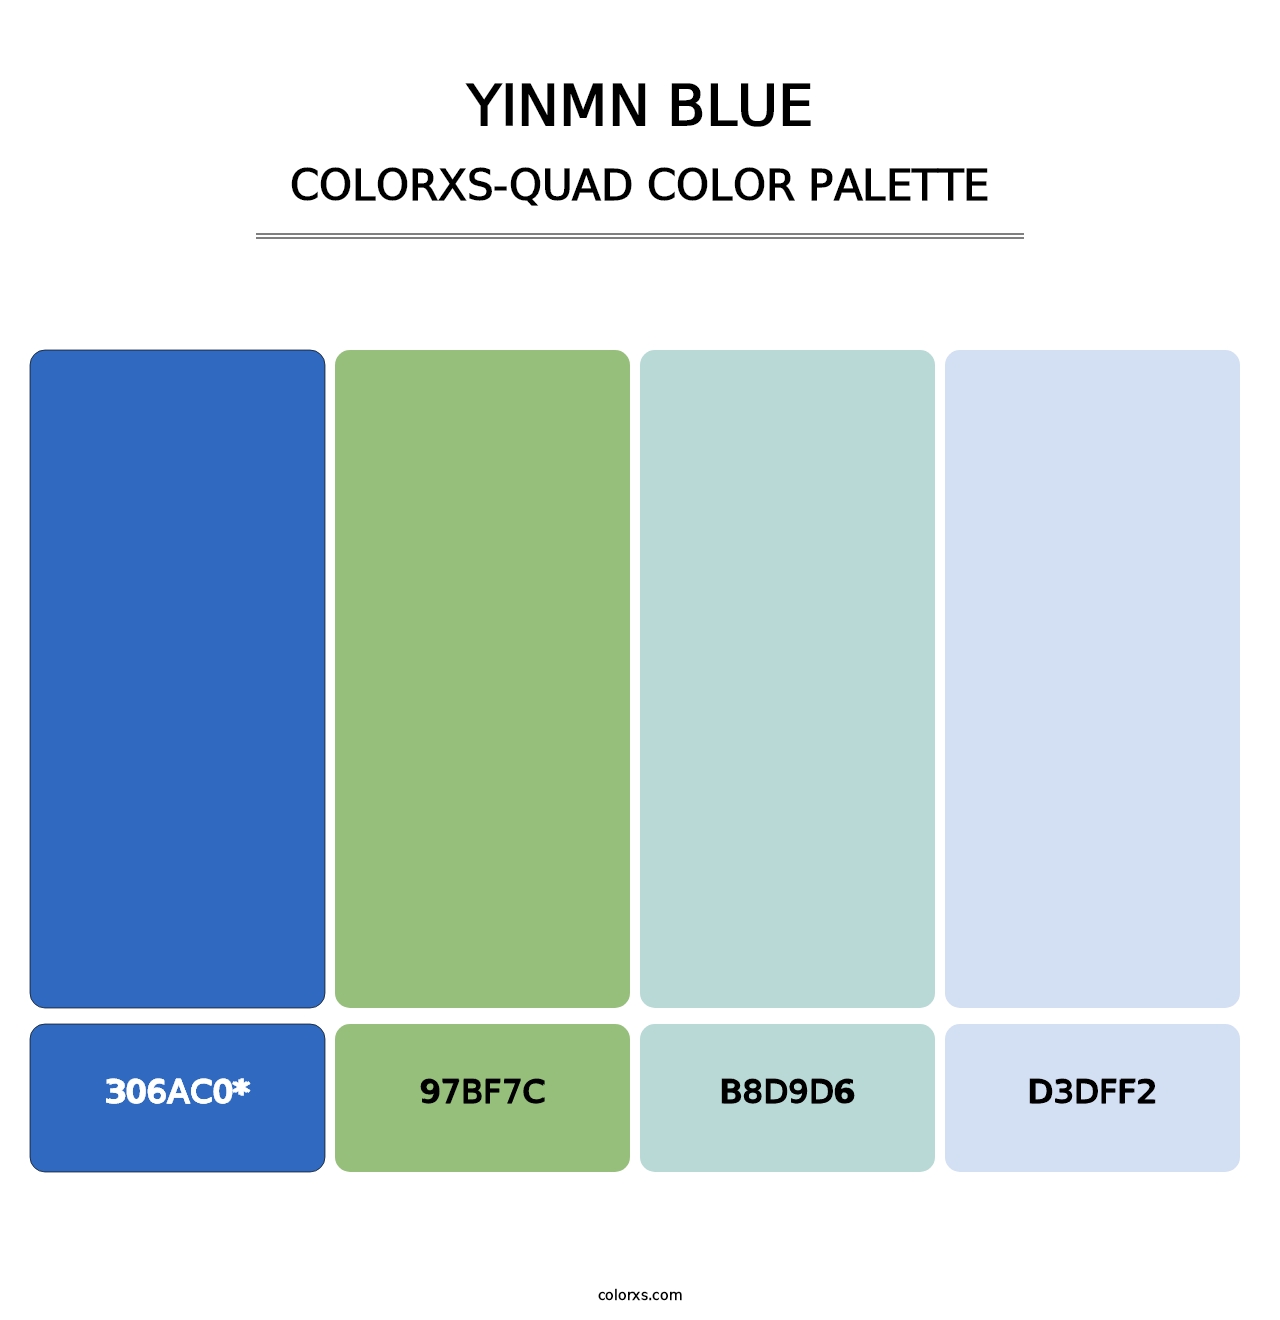 YInMn Blue - Colorxs Quad Palette